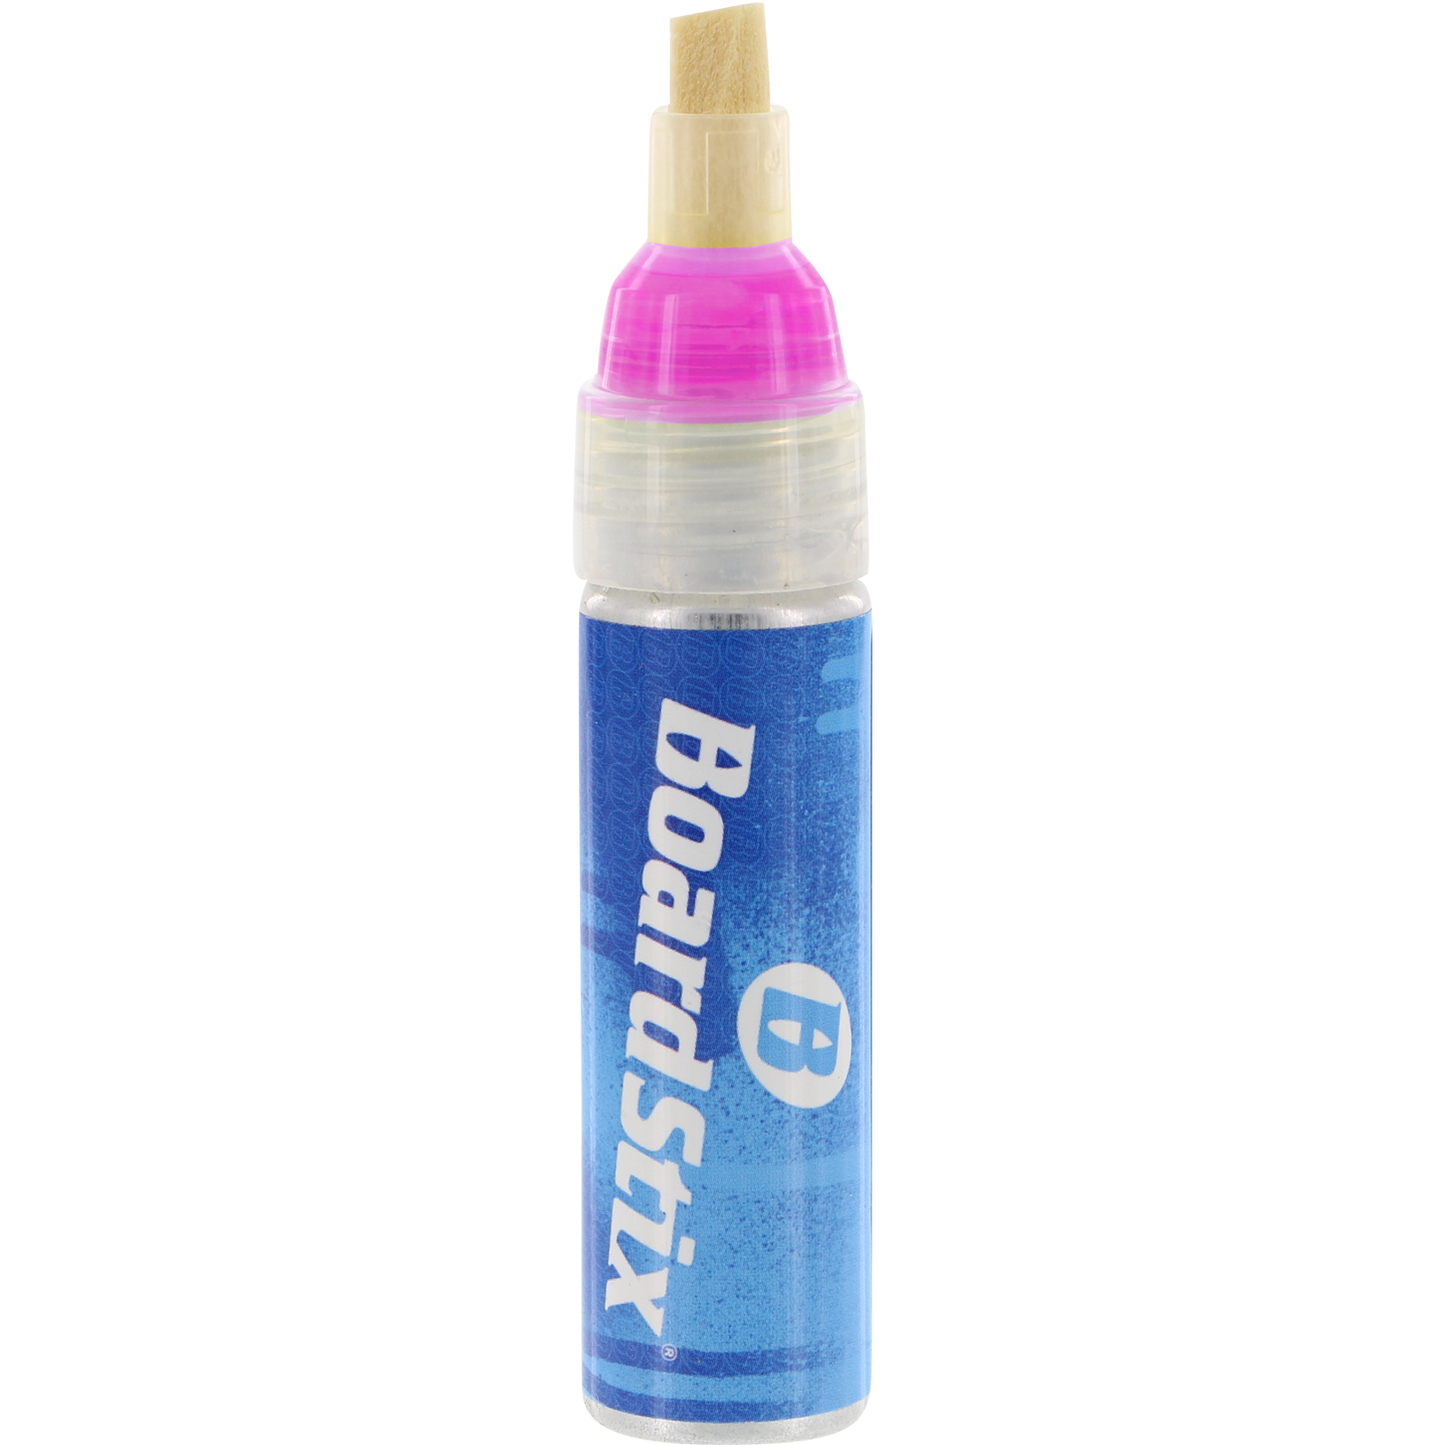 Boardstix Premium Paint Pen Flourescent Pink